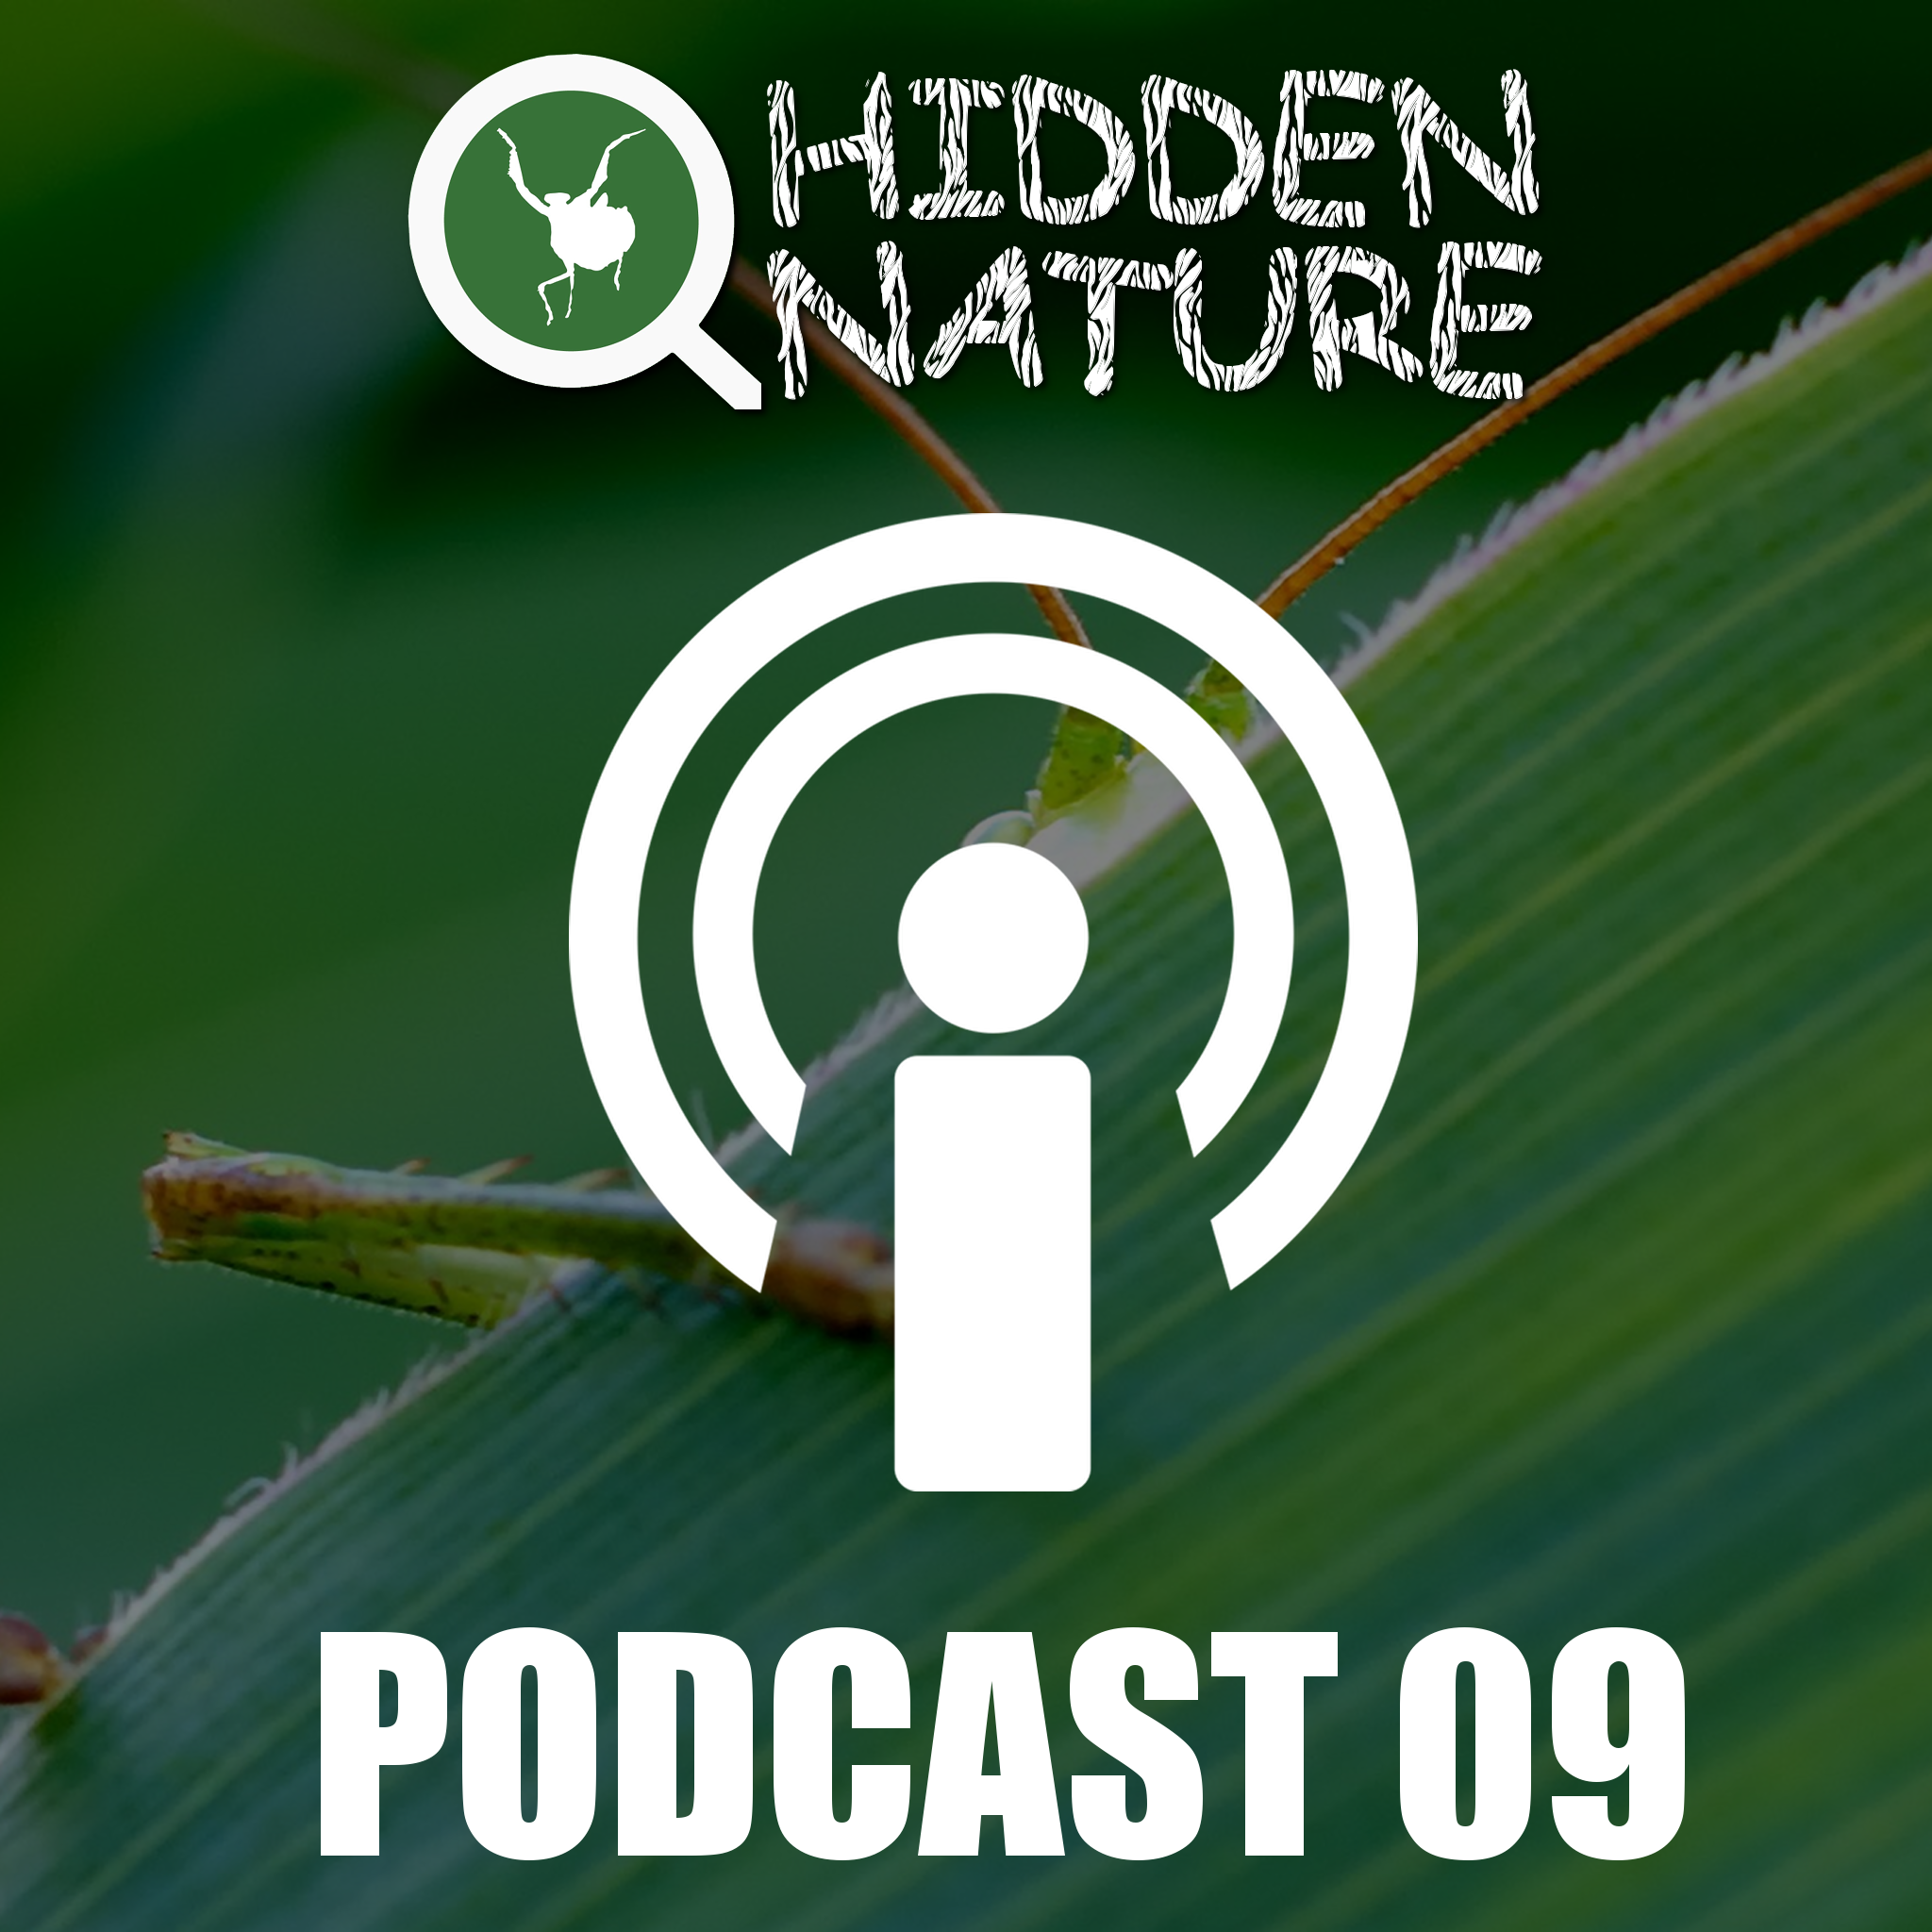 09 – Podcasts Hidden Nature – ¿Qué es la divulgación científica?